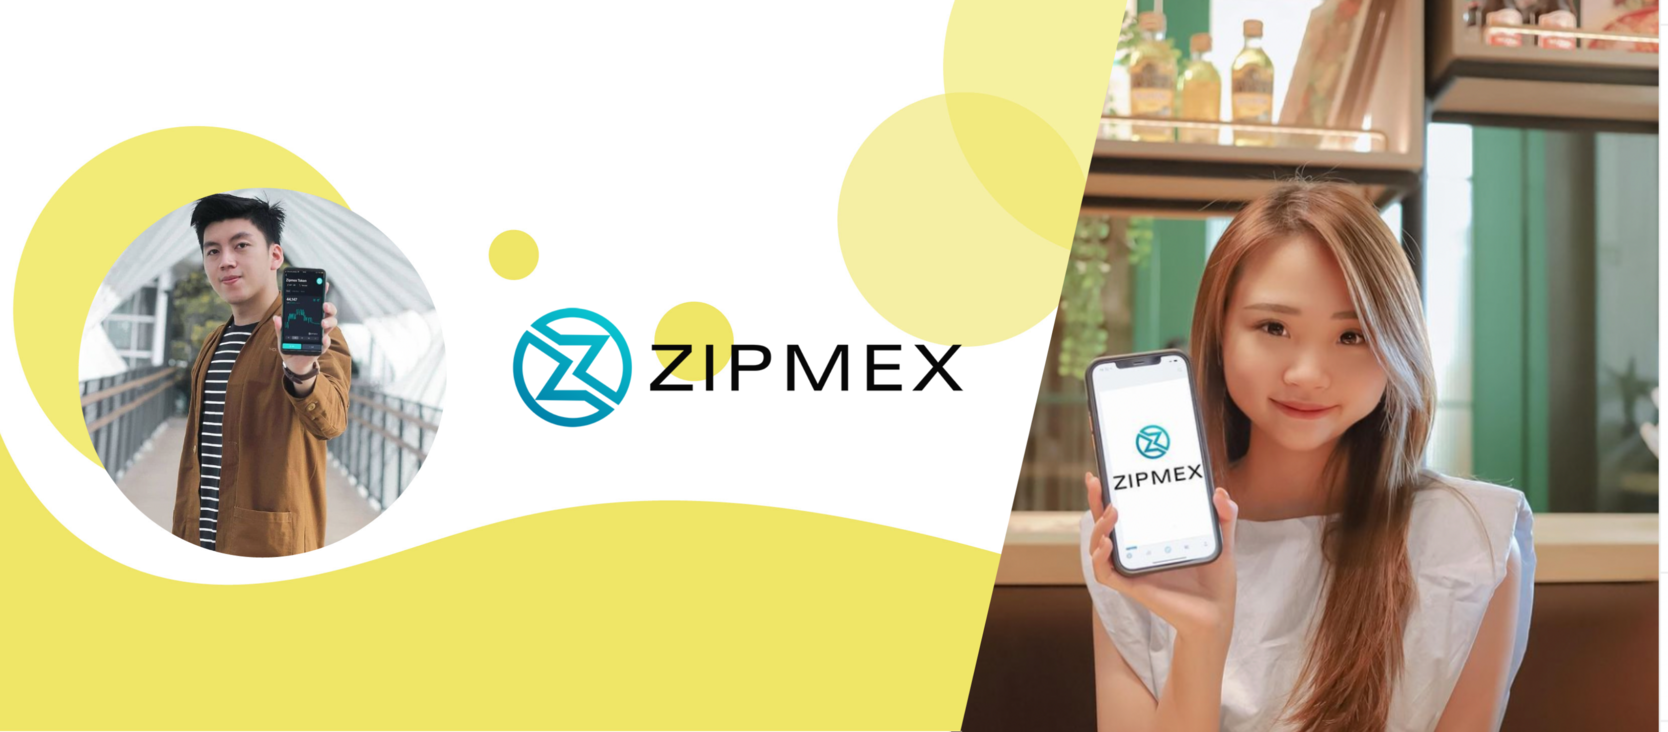 LEMON influencer client success - Zipmex